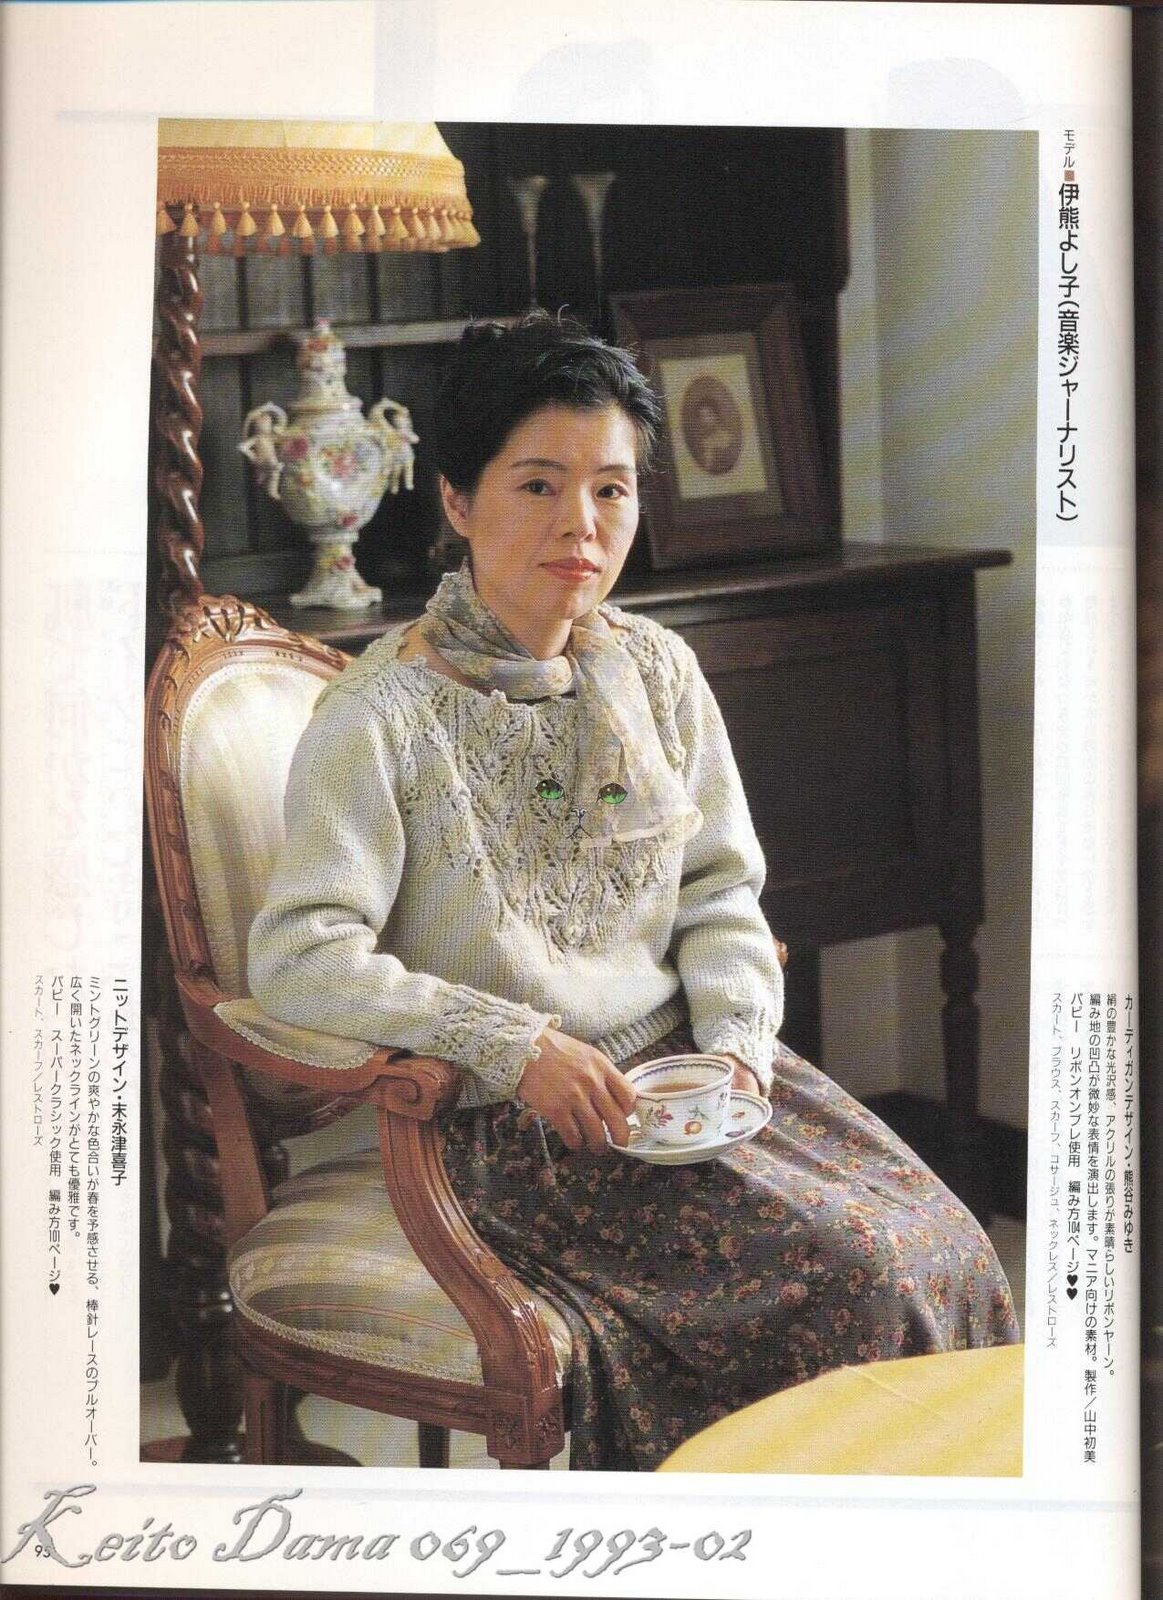 Keito-Dama-069_1993-02-062.jpg